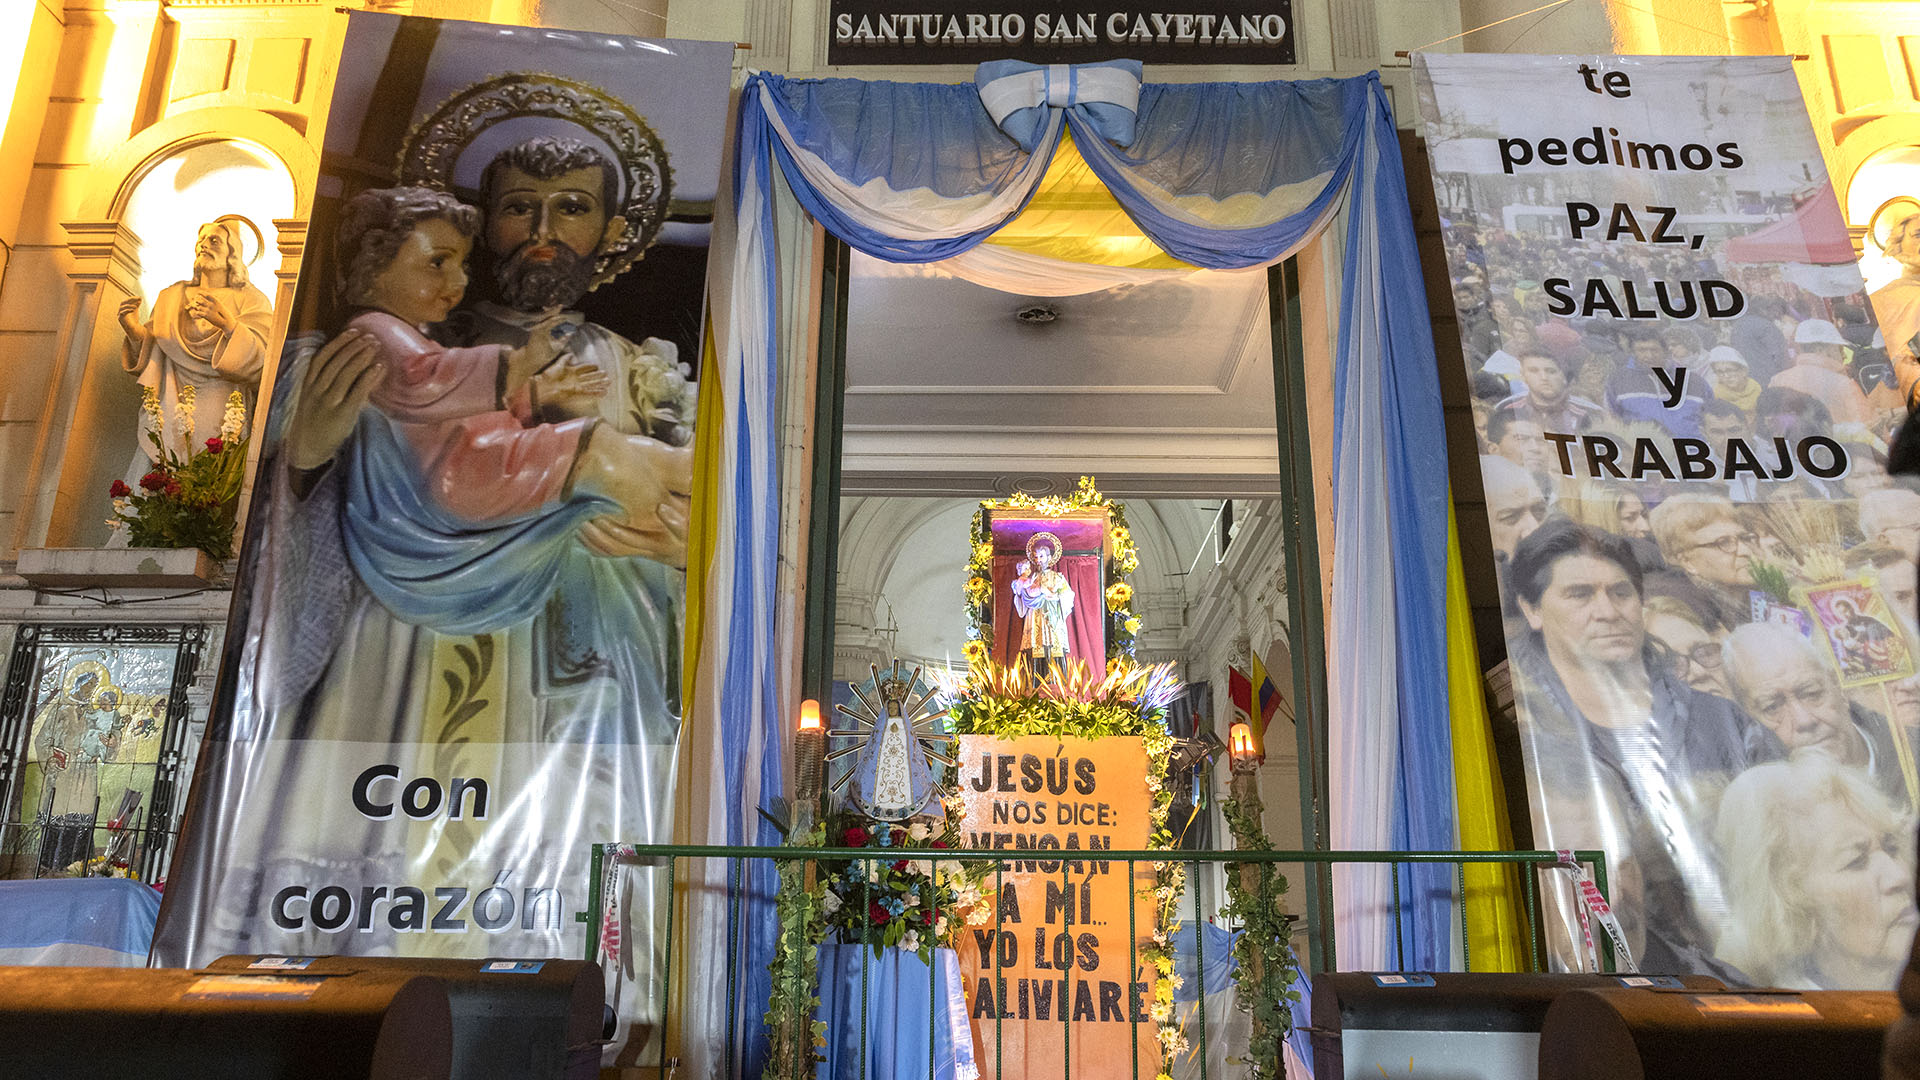 La fachada del santuario de San Cayetano durante la peregrinación del 7 de agosto de 2021 (Christian Gaston Taylor)